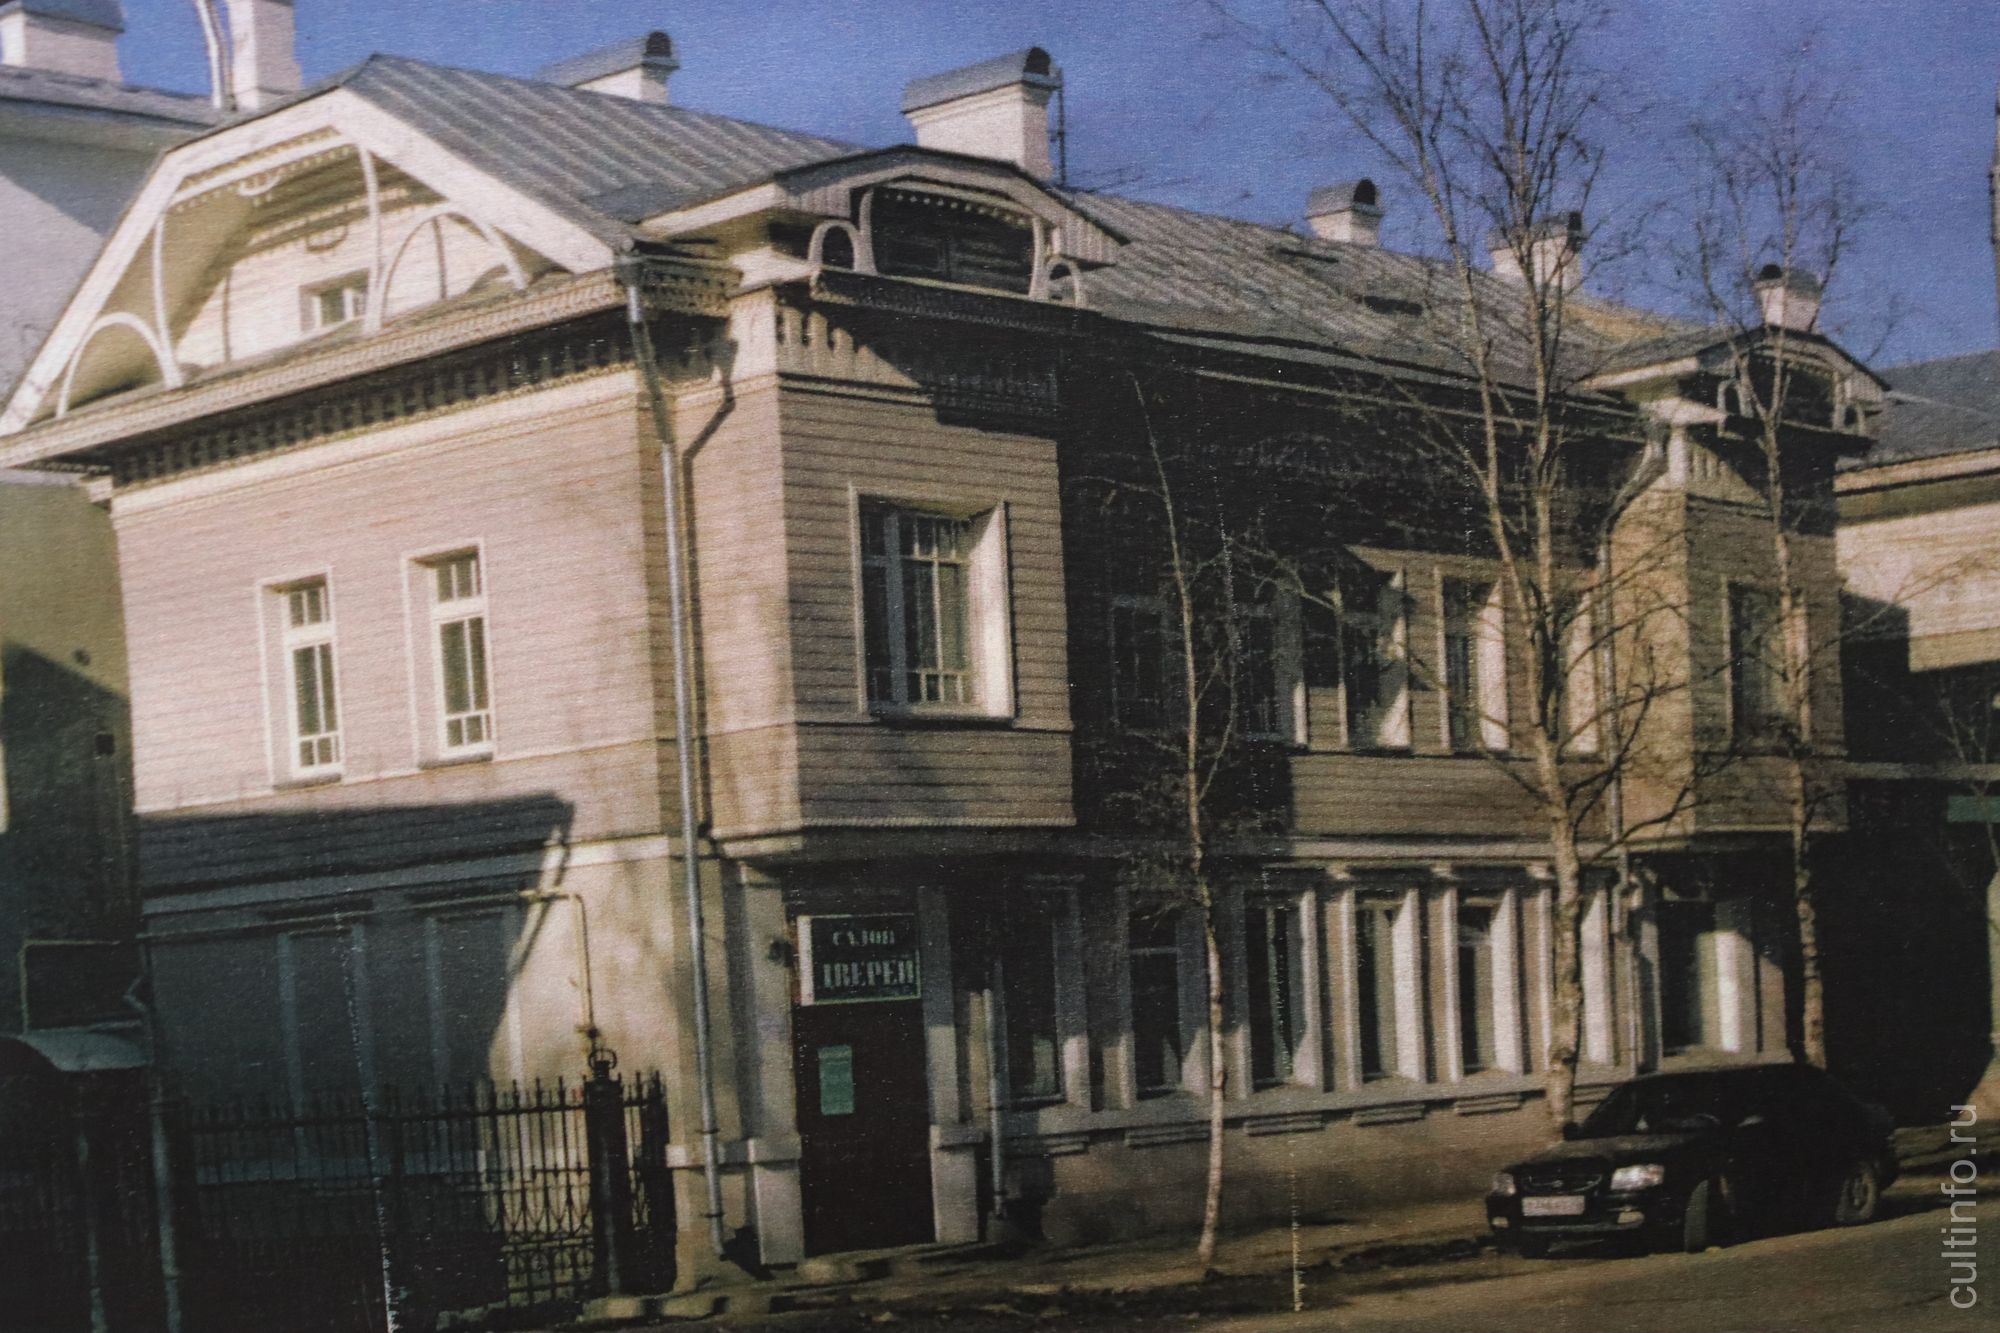 Реконструкция жилых домов по Советскому проспекту, 36. Архитекторы восстановили исторический облик снесенных домов и объединили их в единый комплекс с переходами.